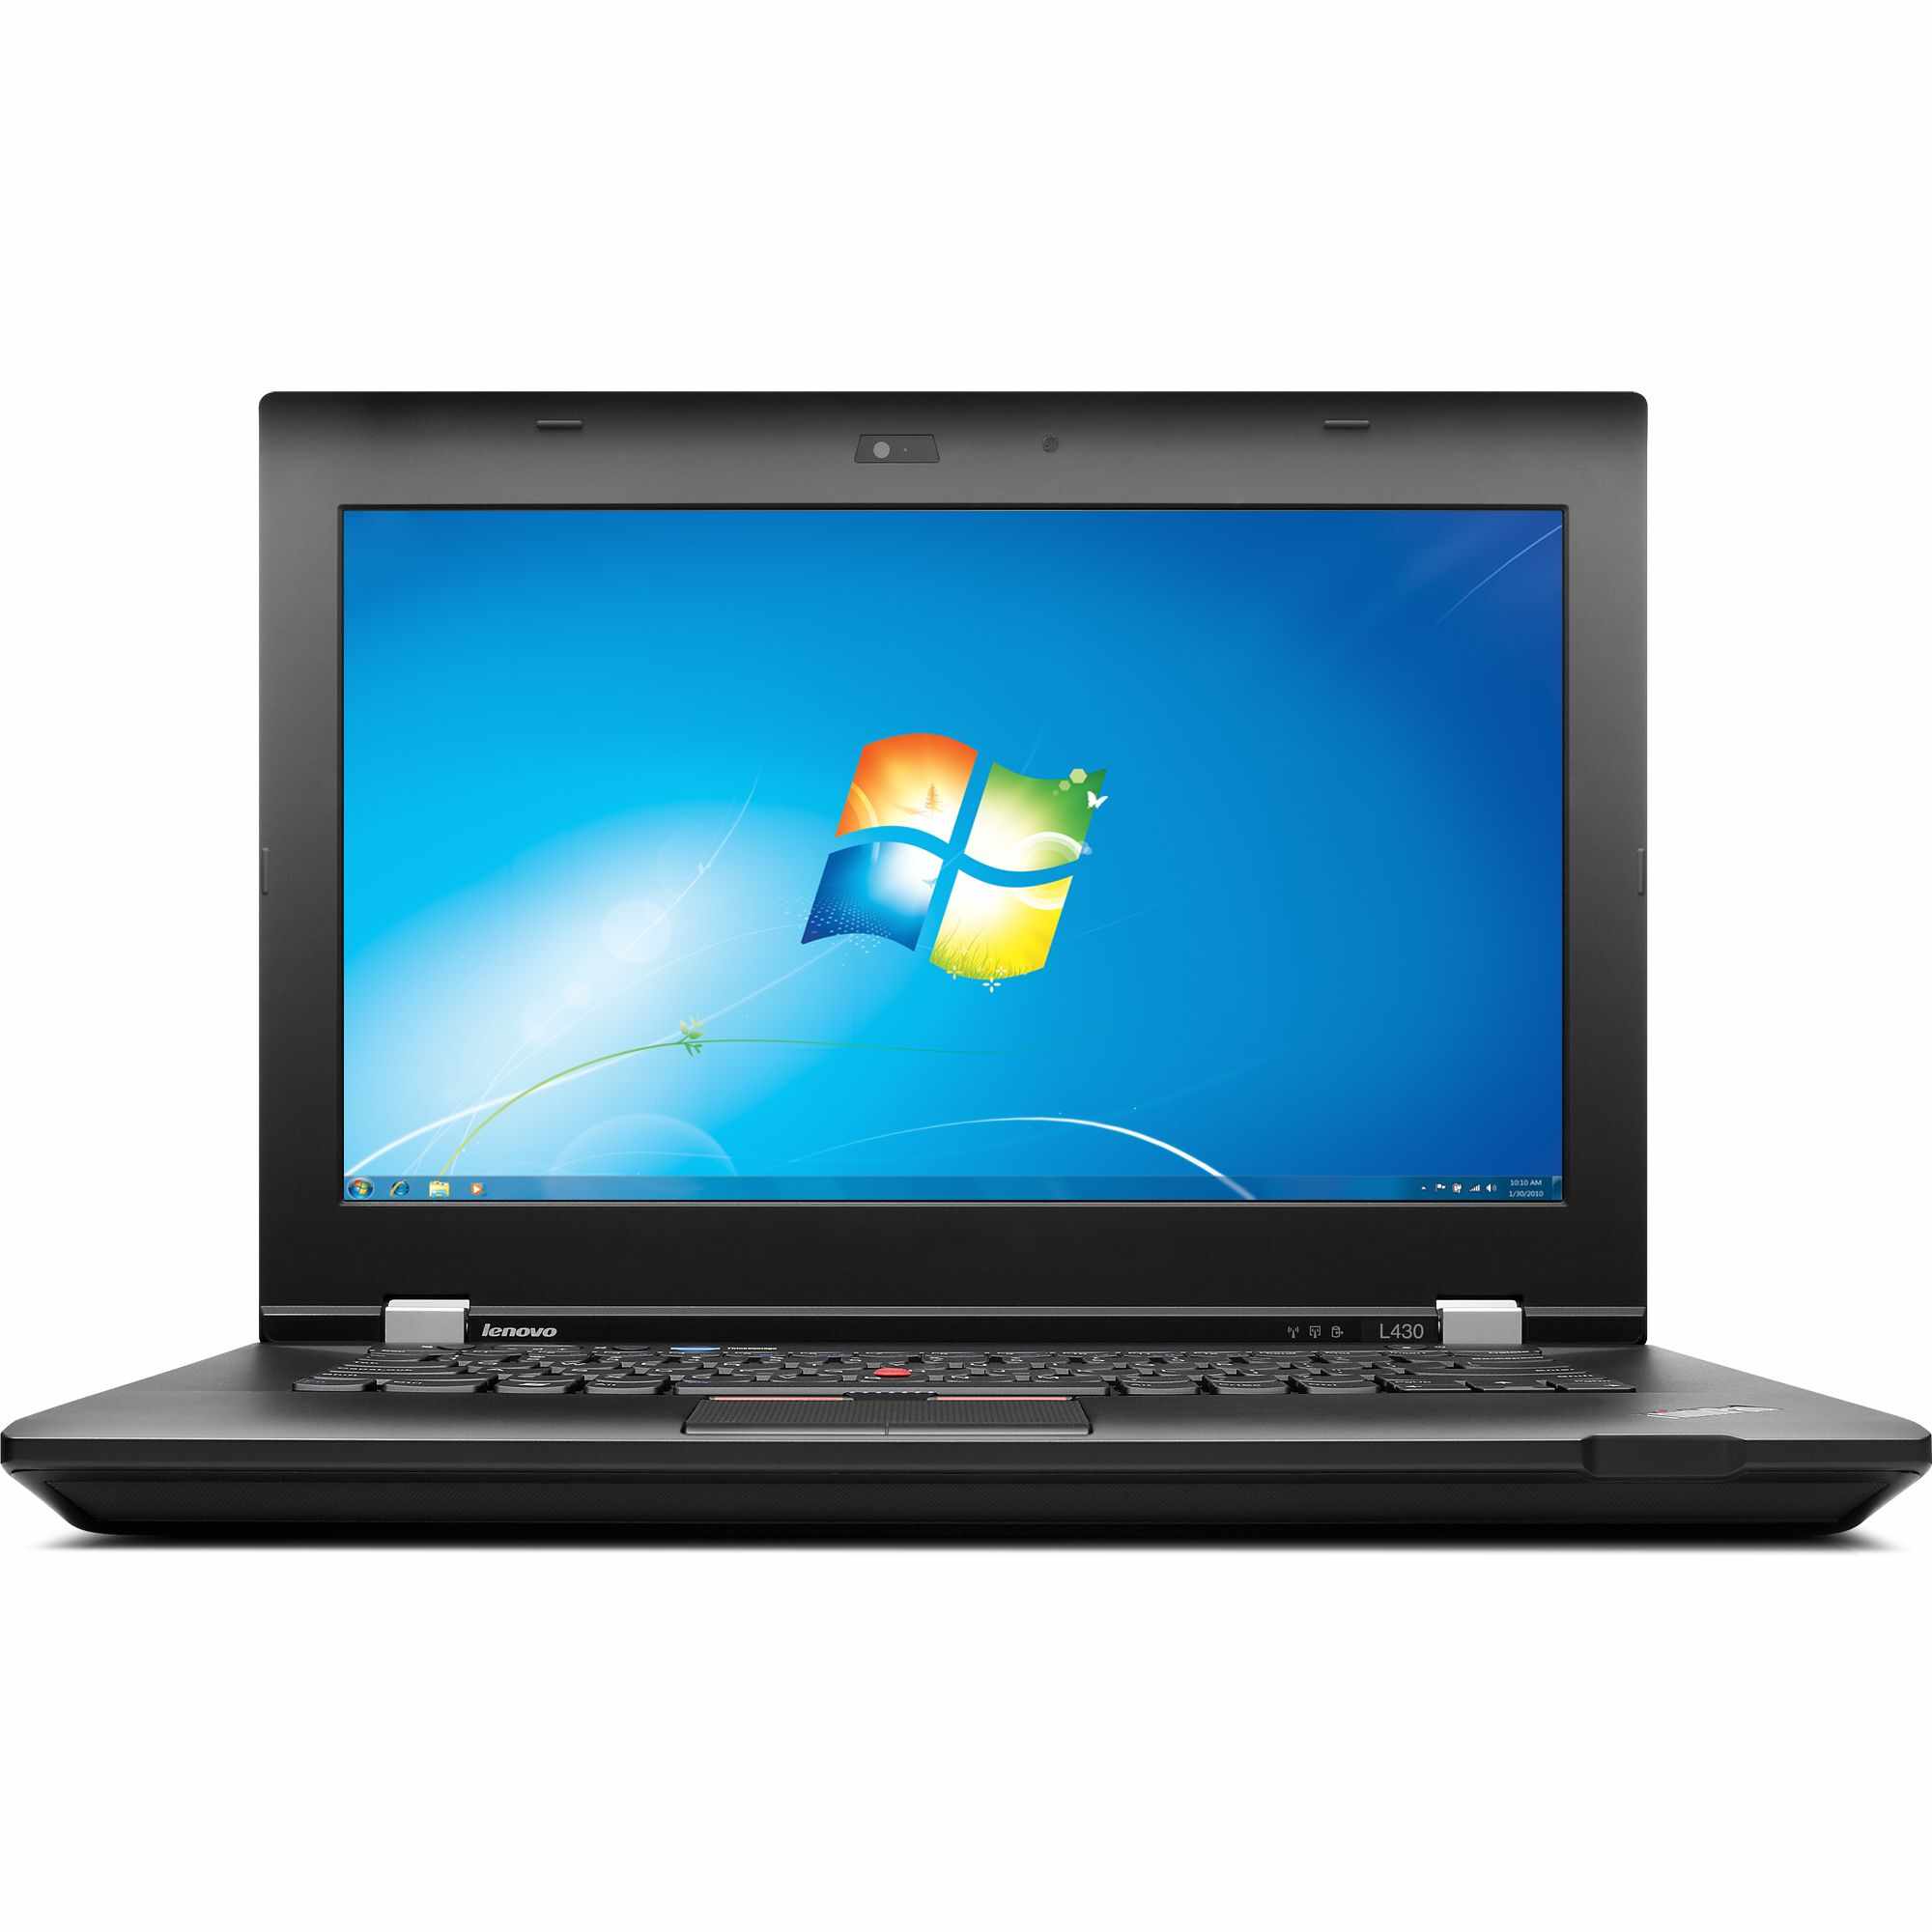 Laptop Lenovo ThinkPad L430, Intel Core i5-3210M 2.50GHz, 4GB DDR3, 500GB SATA, DVD-RW, 14 Inch, Fara Webcam